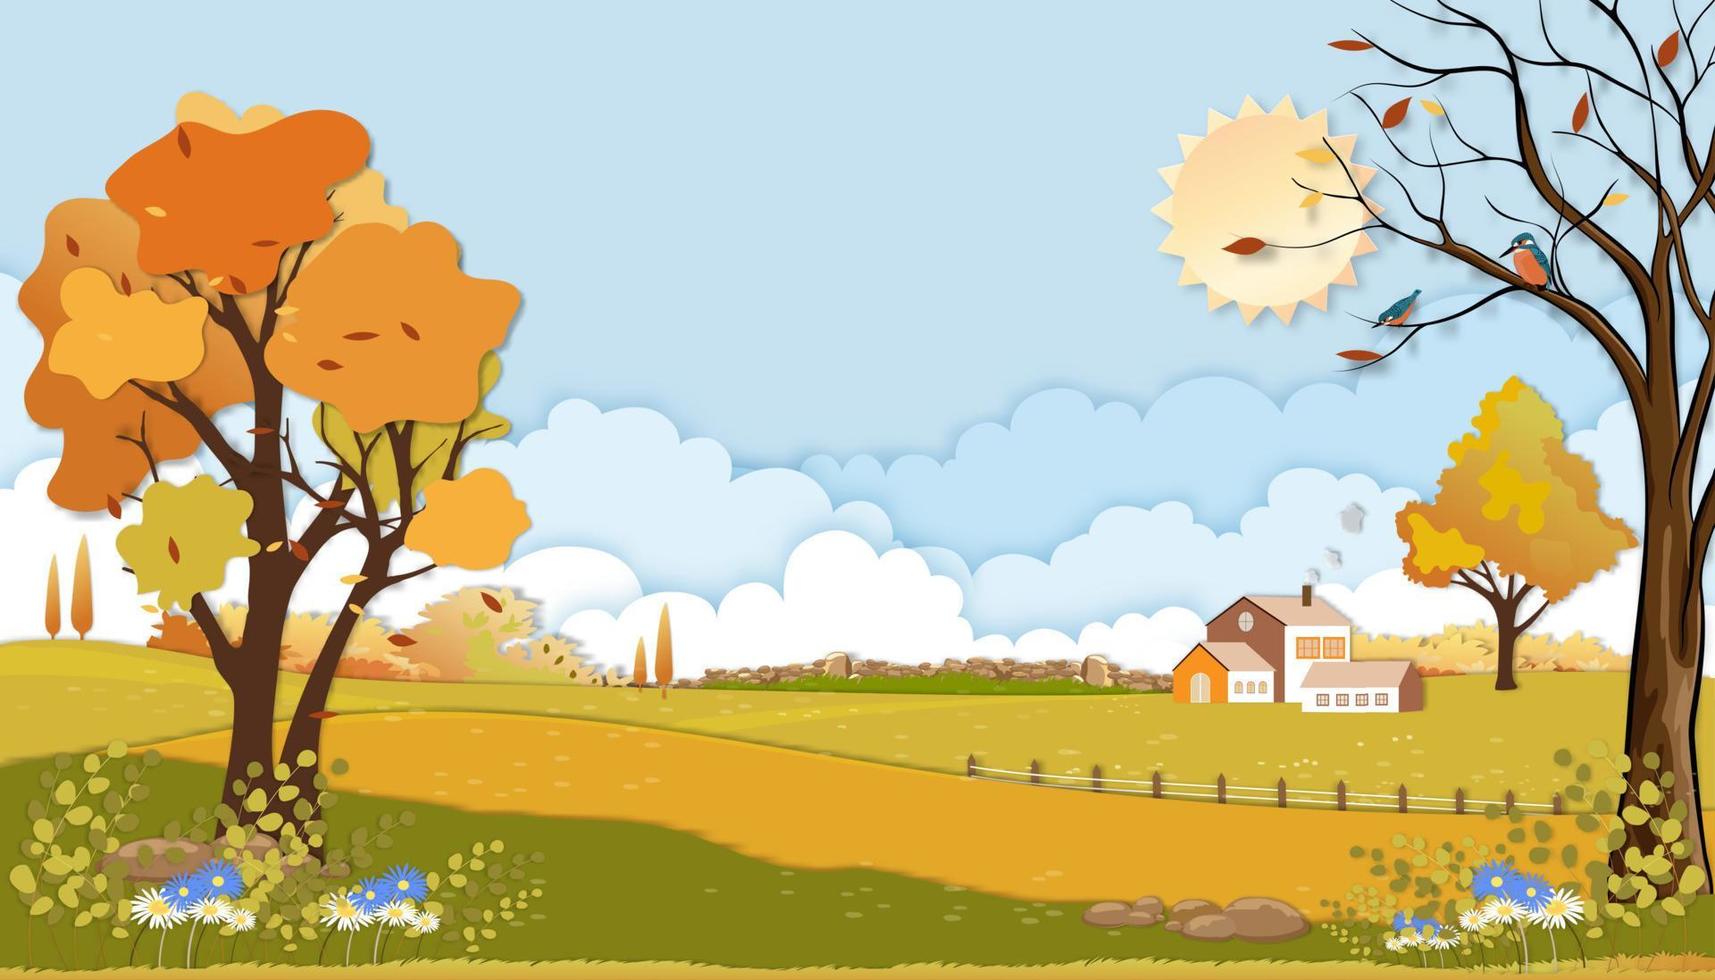 pappersklippt höstlandskap av gårdsfält med moln, blå himmelsbakgrund, papperskonst mitt på hösten på landsbygden i byn med gräsmark i orange lövverk, vektorbanner för höst eller höstbakgrund vektor